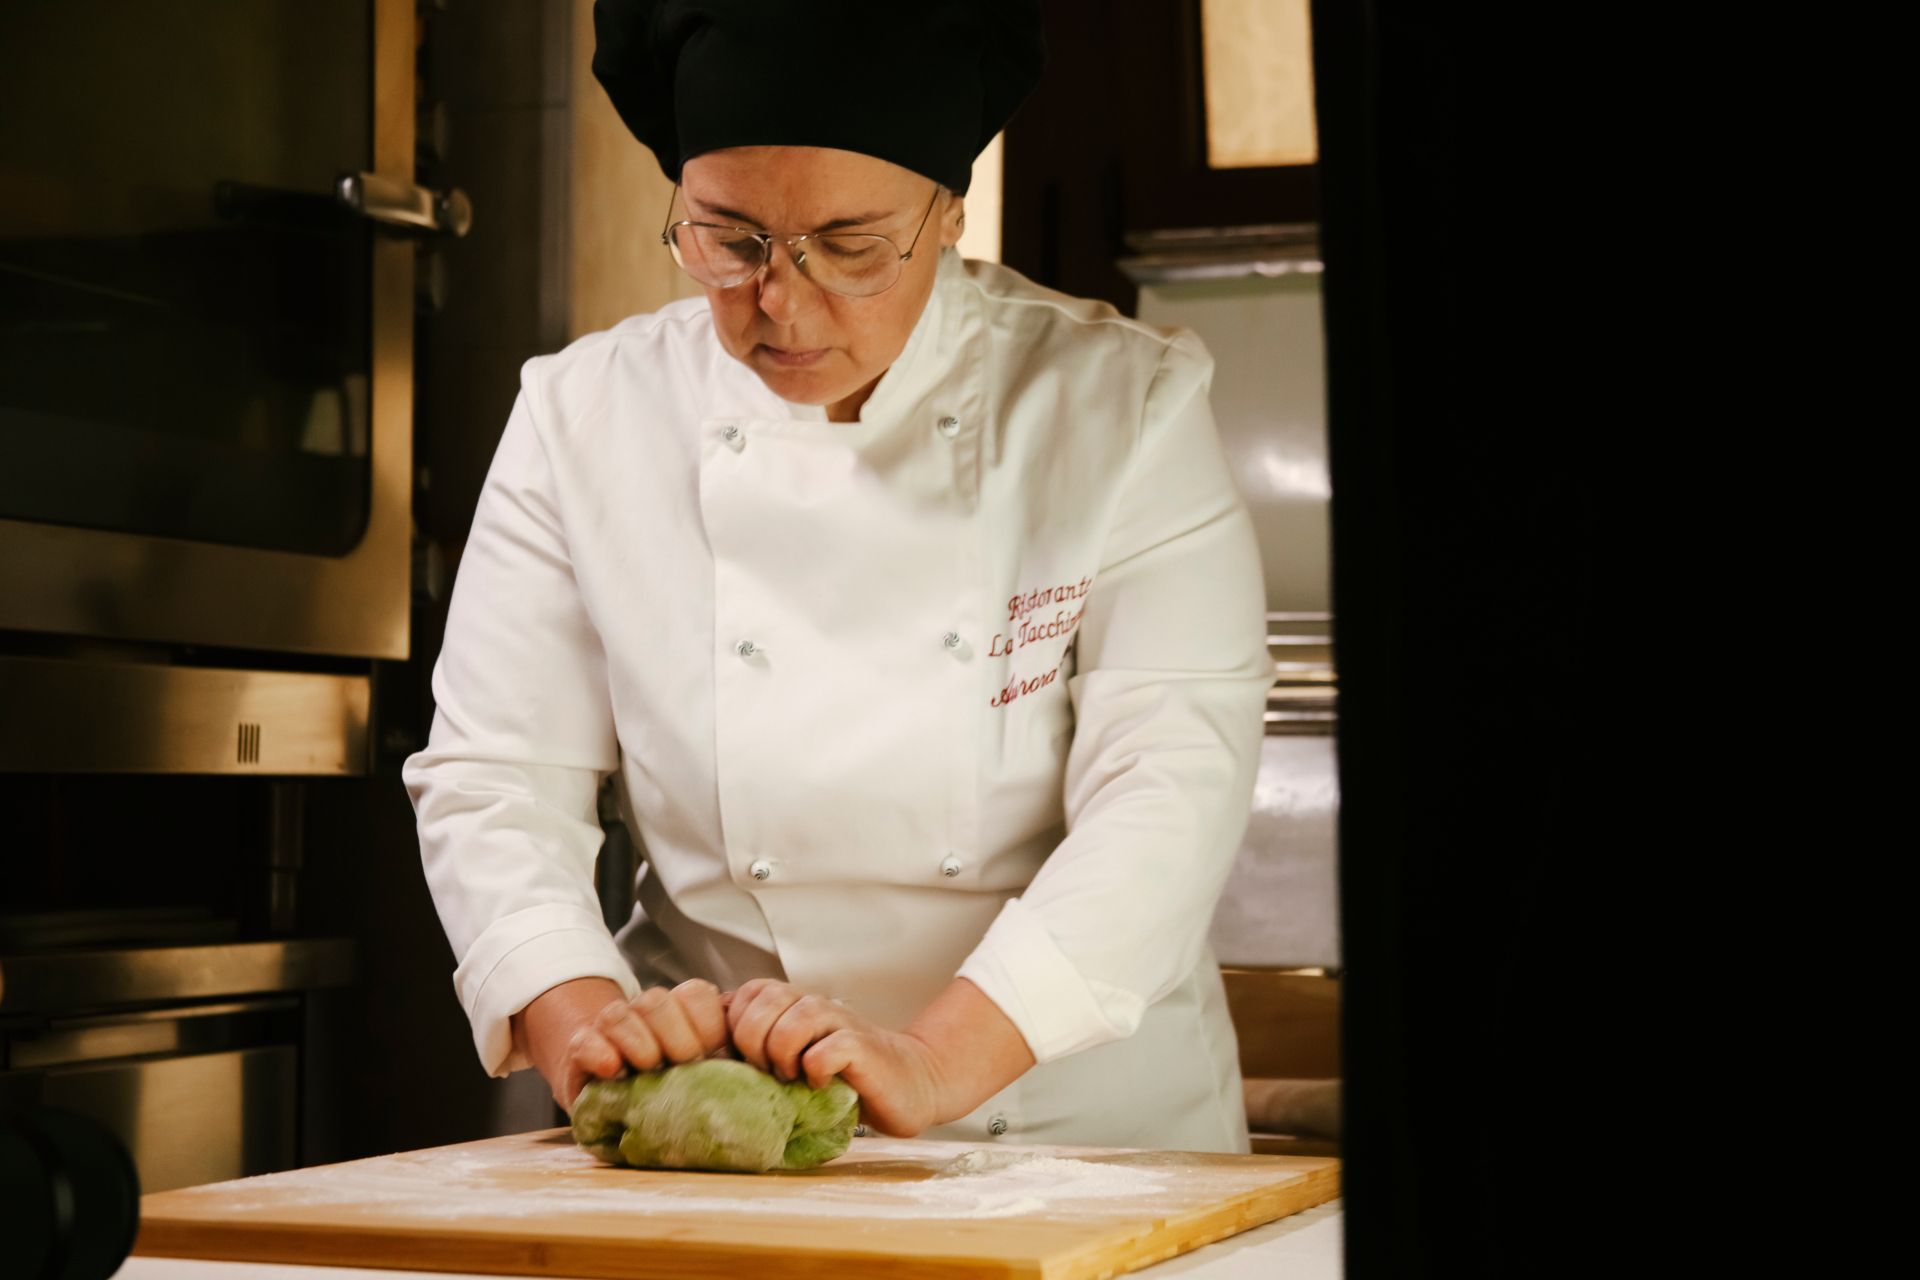 Aurora chef durante mentre ammassa piatto Tricolore fettuccine all'uovo di spinaci con funghi e tartufo del Ristorante La Tacchinella di Canzano a Teramo in Abruzzo